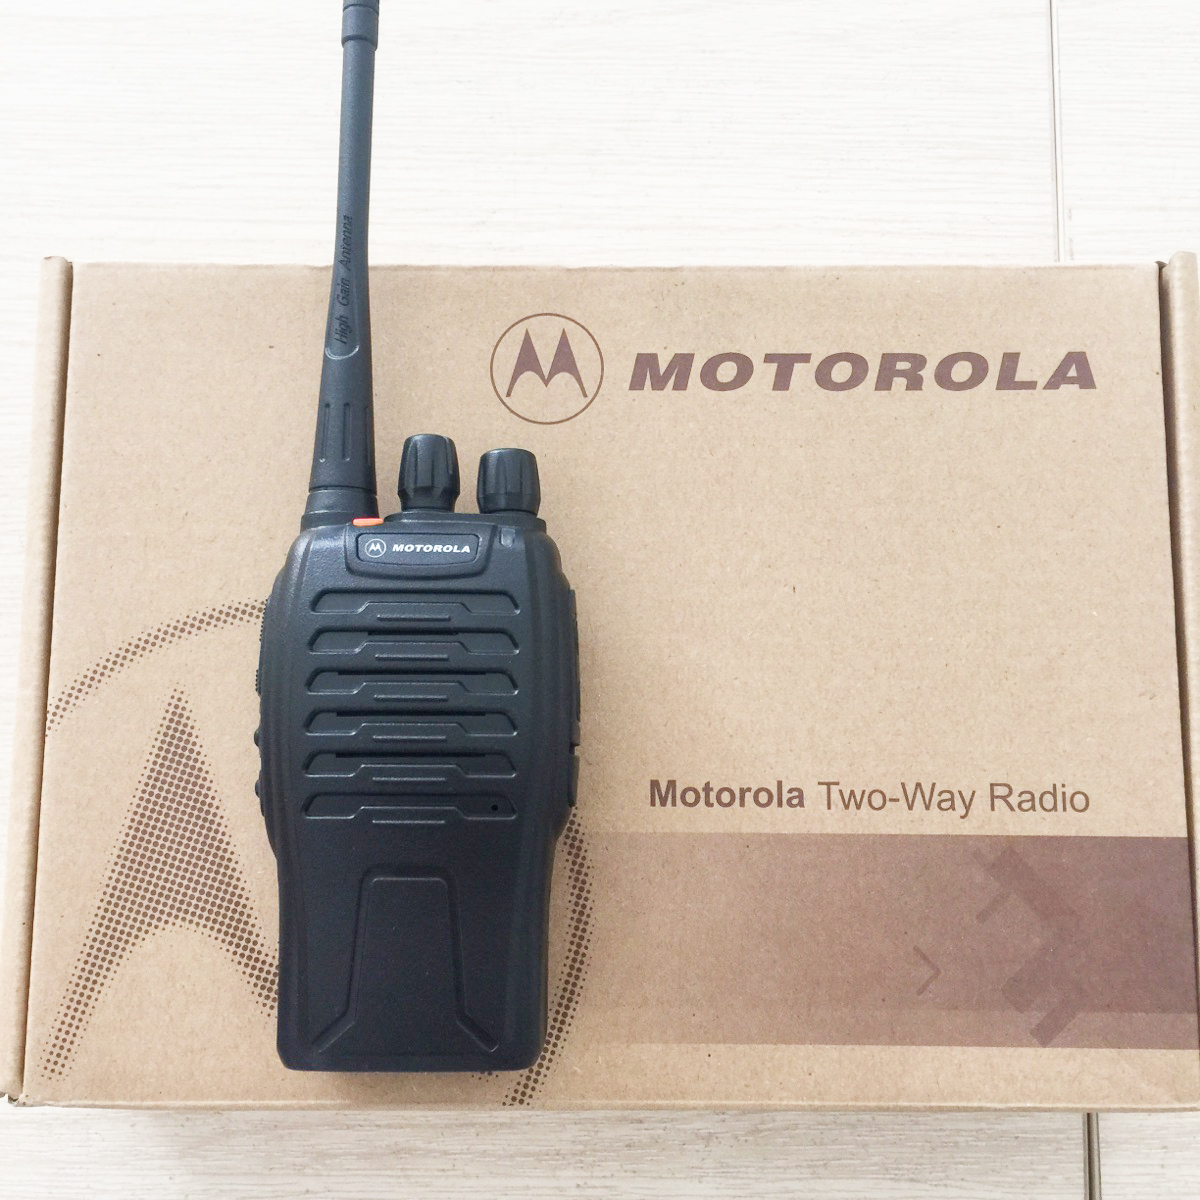  Máy bộ đàm Motorola GP 668 là thiết bị đa năng, là sự lựa chọn hoàn hảo cho khách hàng